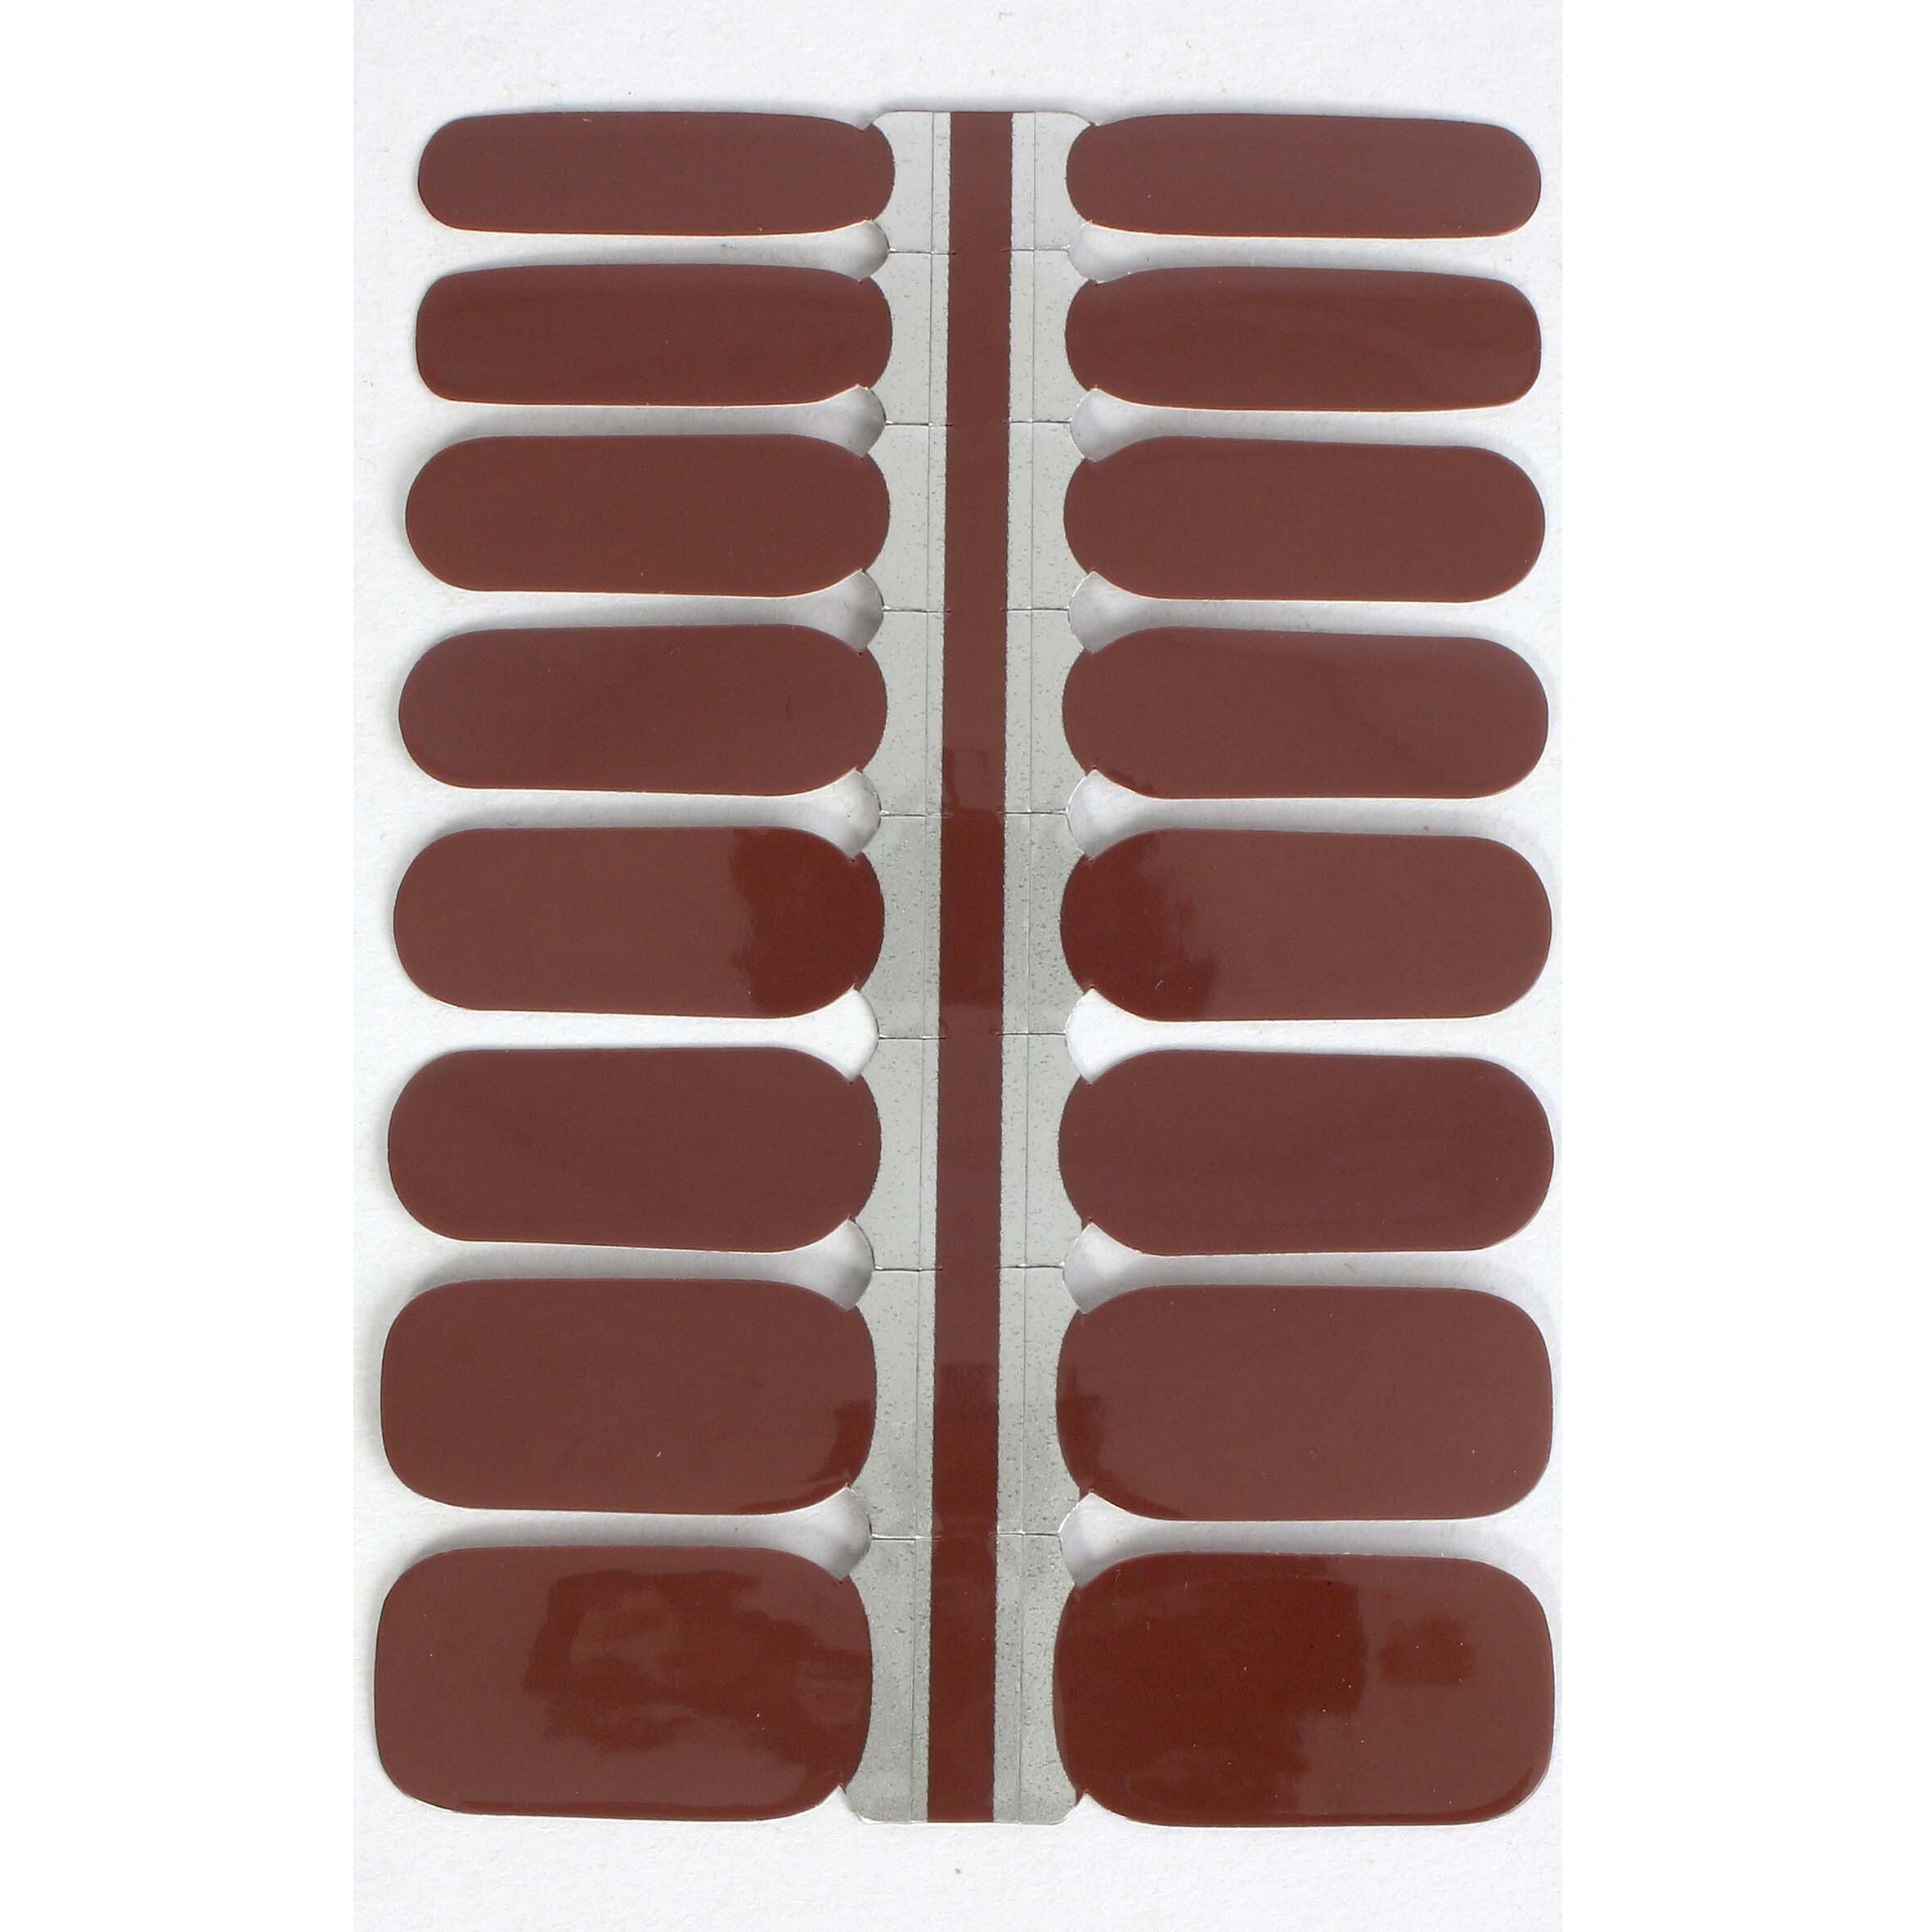 LAUED Nagellack solid brown, Produktion aus Material Shake (FSC) und zertifizierter Mocha (SGS SEDEX) 